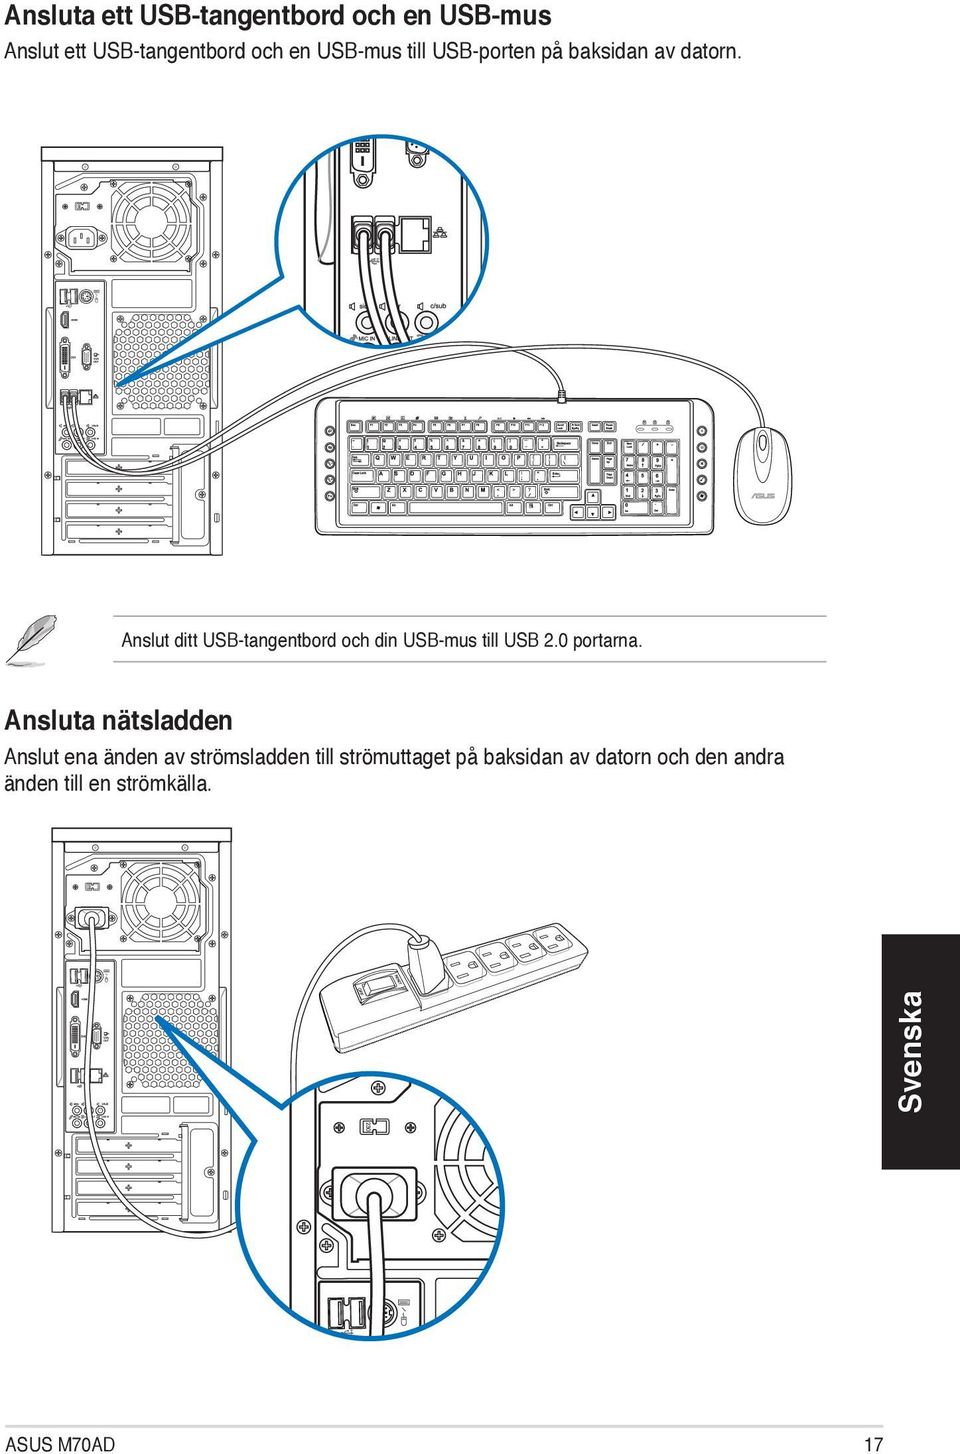 ` Anslut ditt USB-tangentbord och din USB-mus till USB 2.0 portarna.